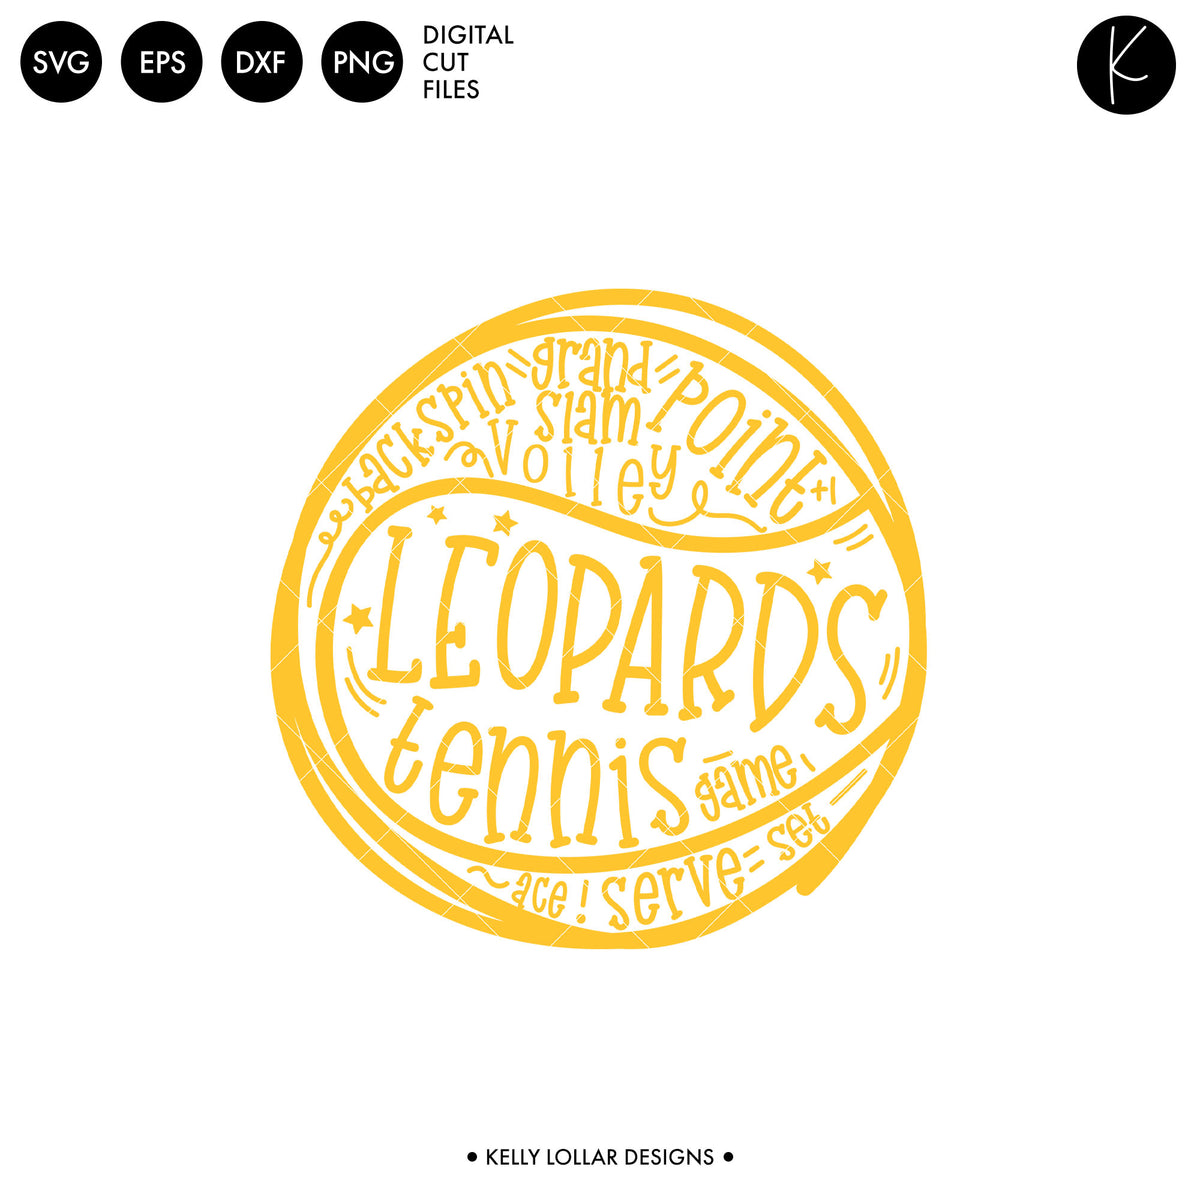 Leopards Tennis Bundle | SVG DXF EPS PNG Cut Files